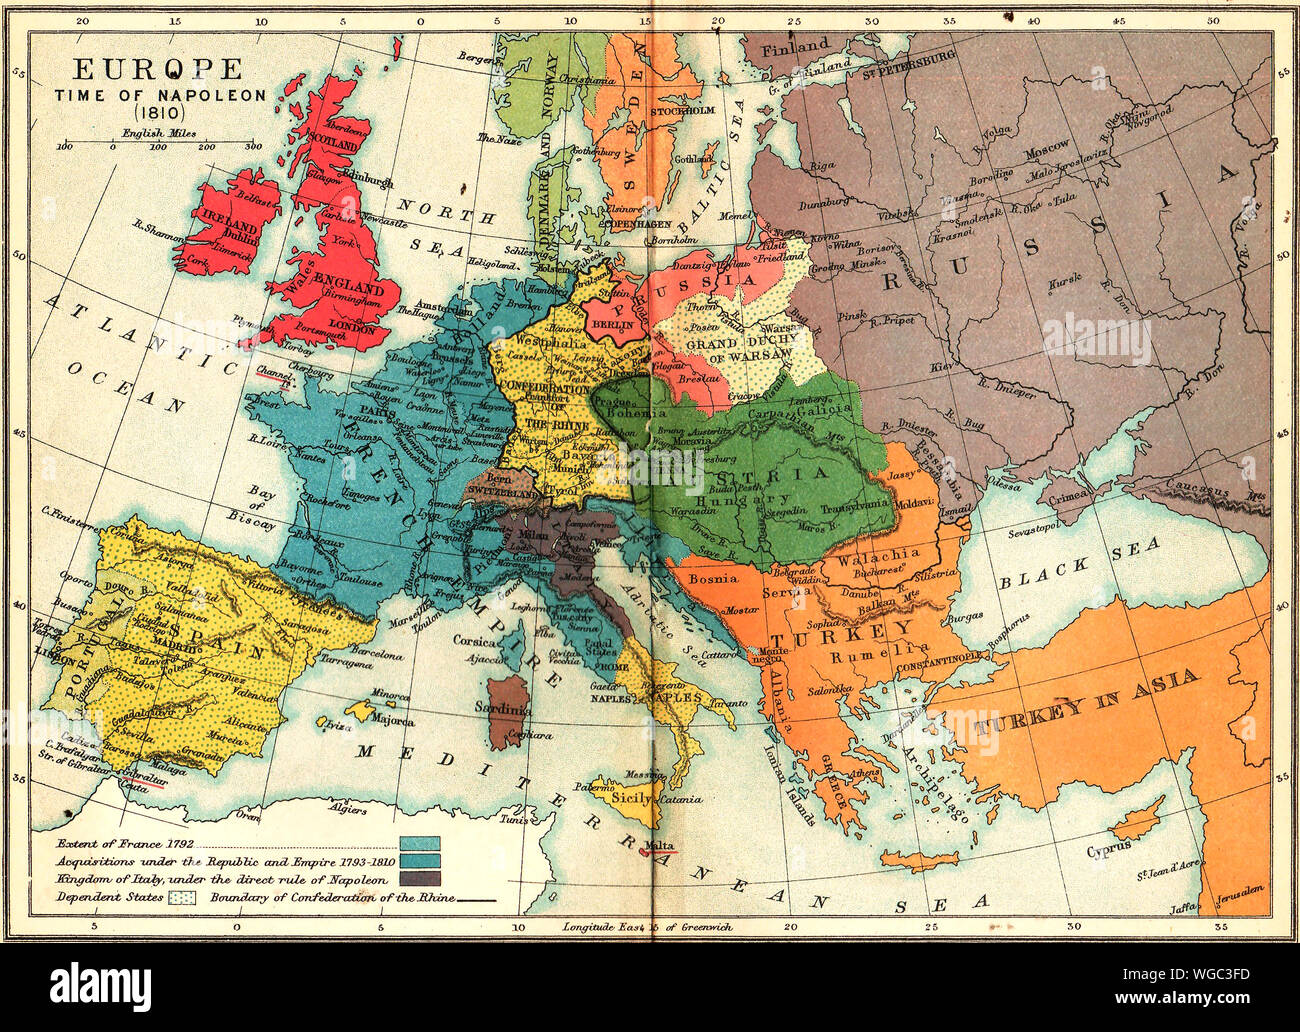 Un mapa de 1910 mostrando Europa en la época de Napoleón (1810) - Mostrar estado de Francia en 1792 y sus adquisiciones hasta 1810, Italia Reino bajo el Imperio de Napoleón,estados dependientes y el límite de la Confederación del Rin. Foto de stock